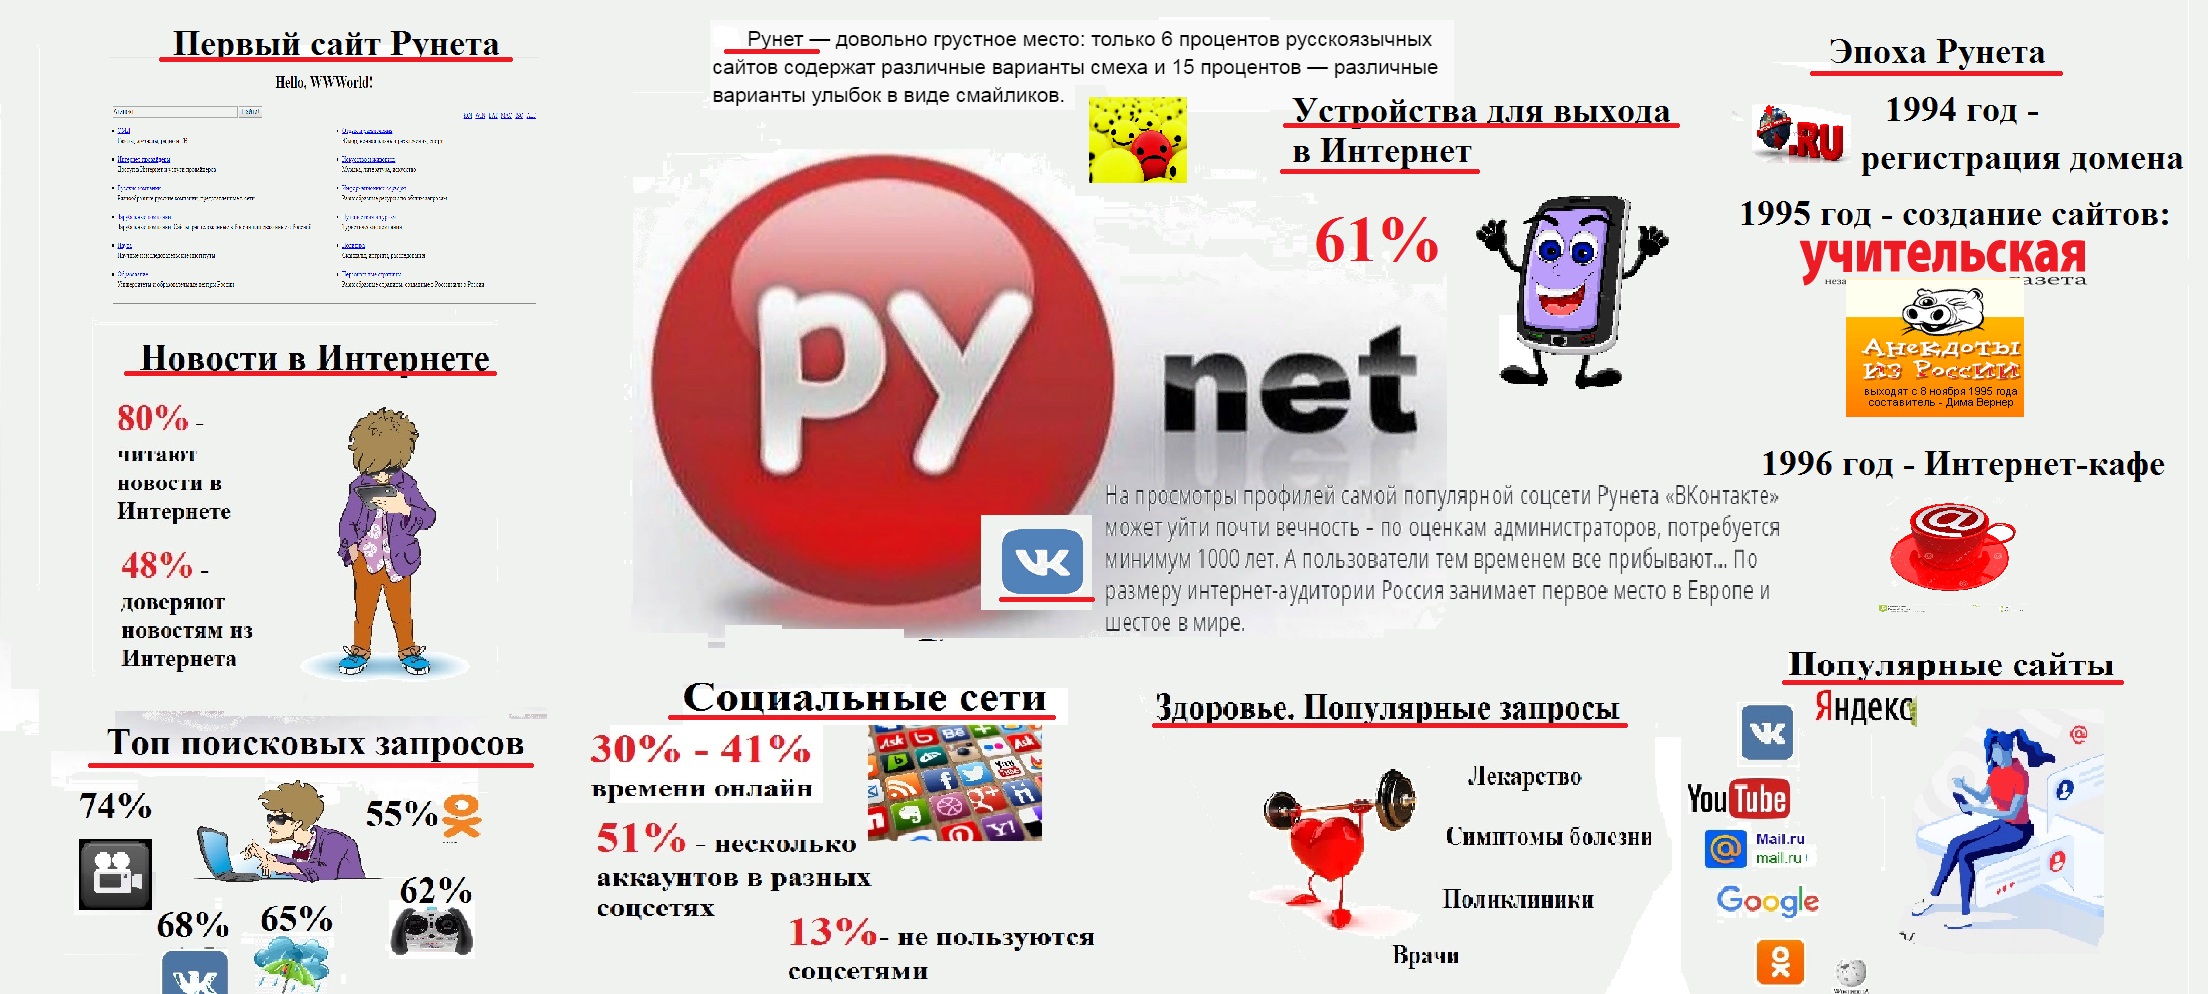 Первый пользователь читать. Первые сайты рунета. Рунет.ру. Интернет рунет 1994 год. Рунет факты.